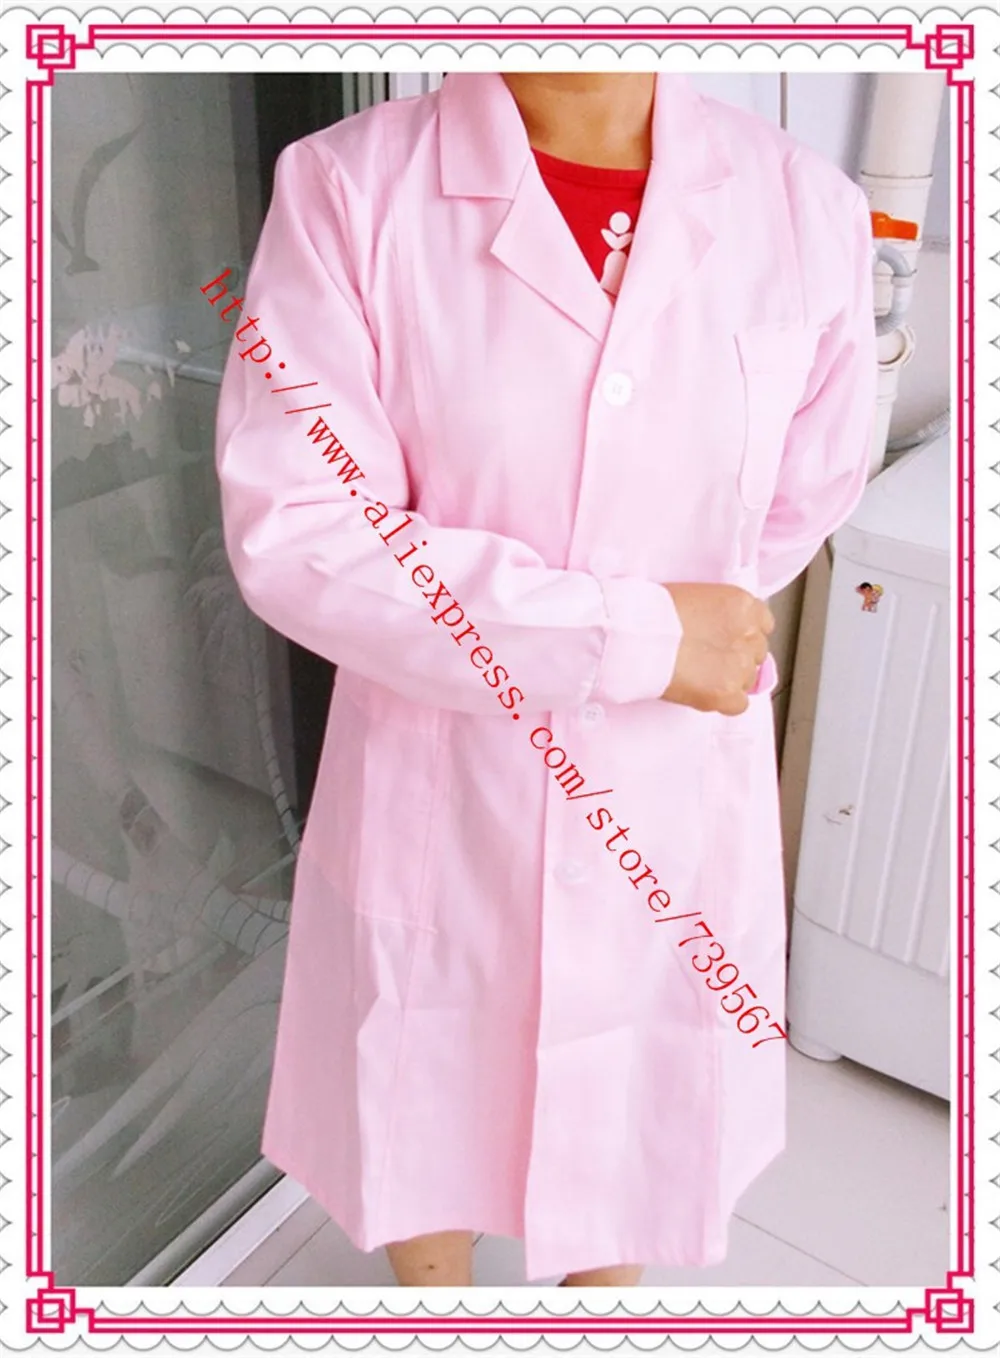 Медицинские скрабы Женщины/медицинская форма Женщины Рабочая одежда лабораторное пальто/медицинская одежда форма медсестры женщины лацкан медицинская униформа